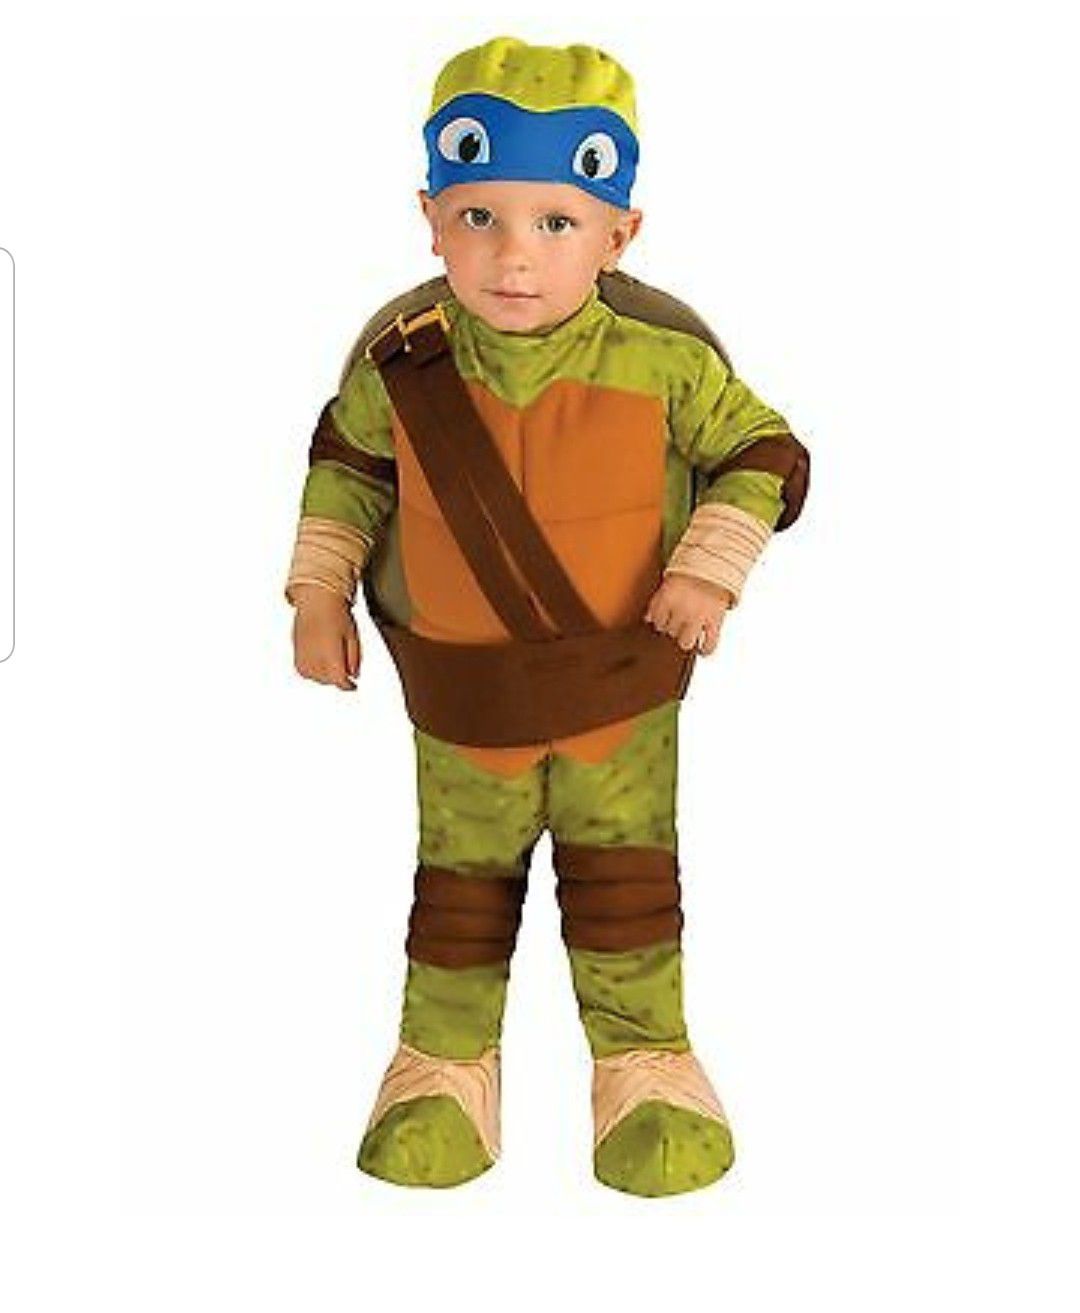 Leonardo ninja rurtles costume 2t/4t